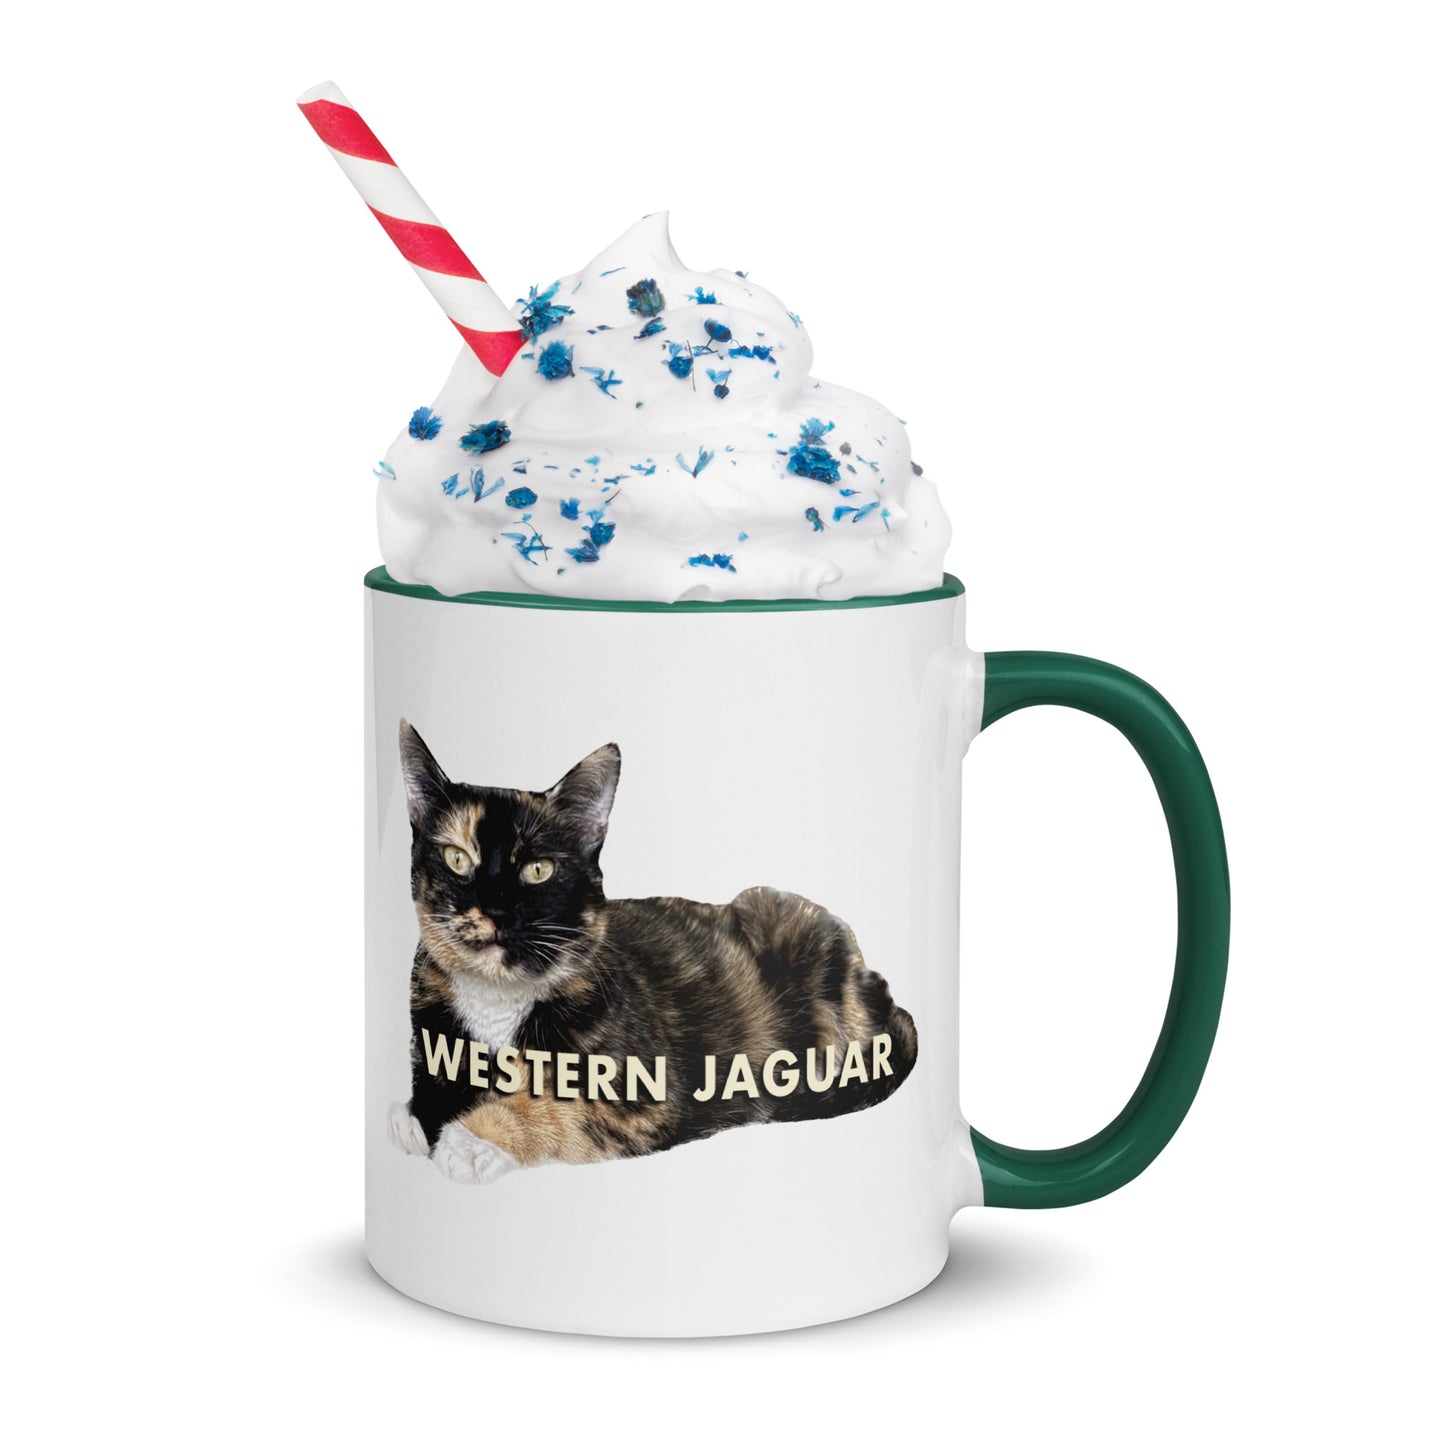 Western Jaguar Cat Mug With Color Inside